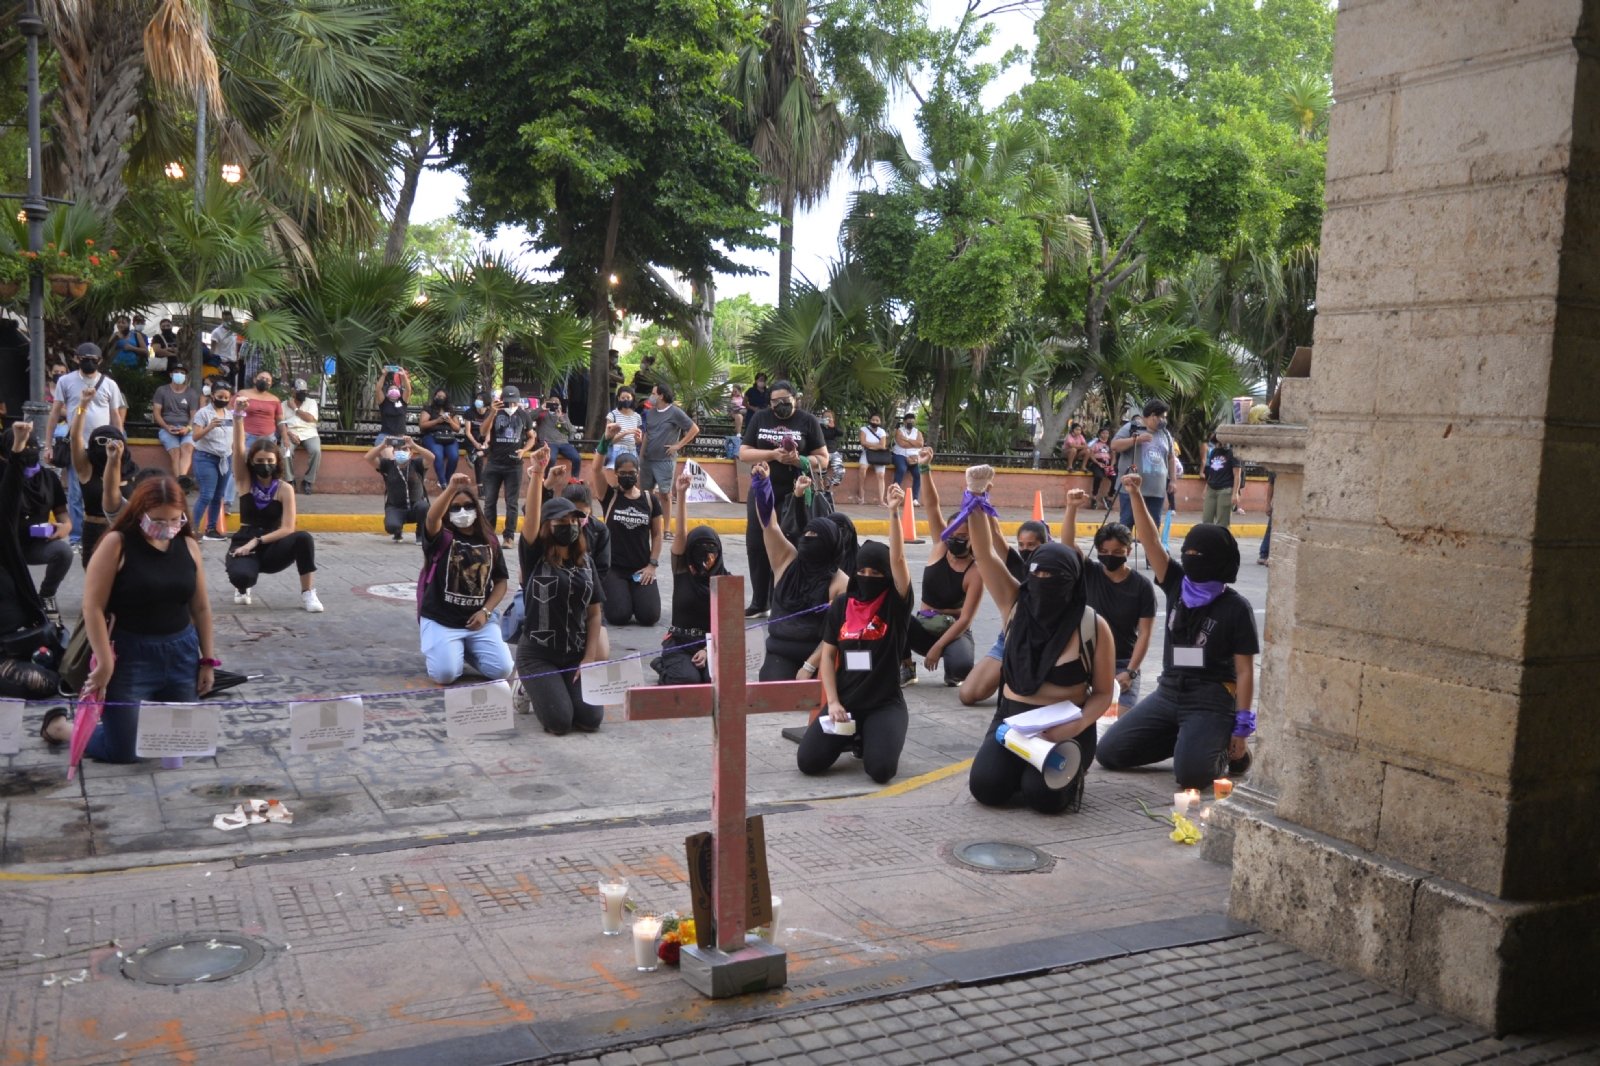 Mujeres protestan frente al Palacio de Gobierno de Yucatán contra feminicidios: VIDEO